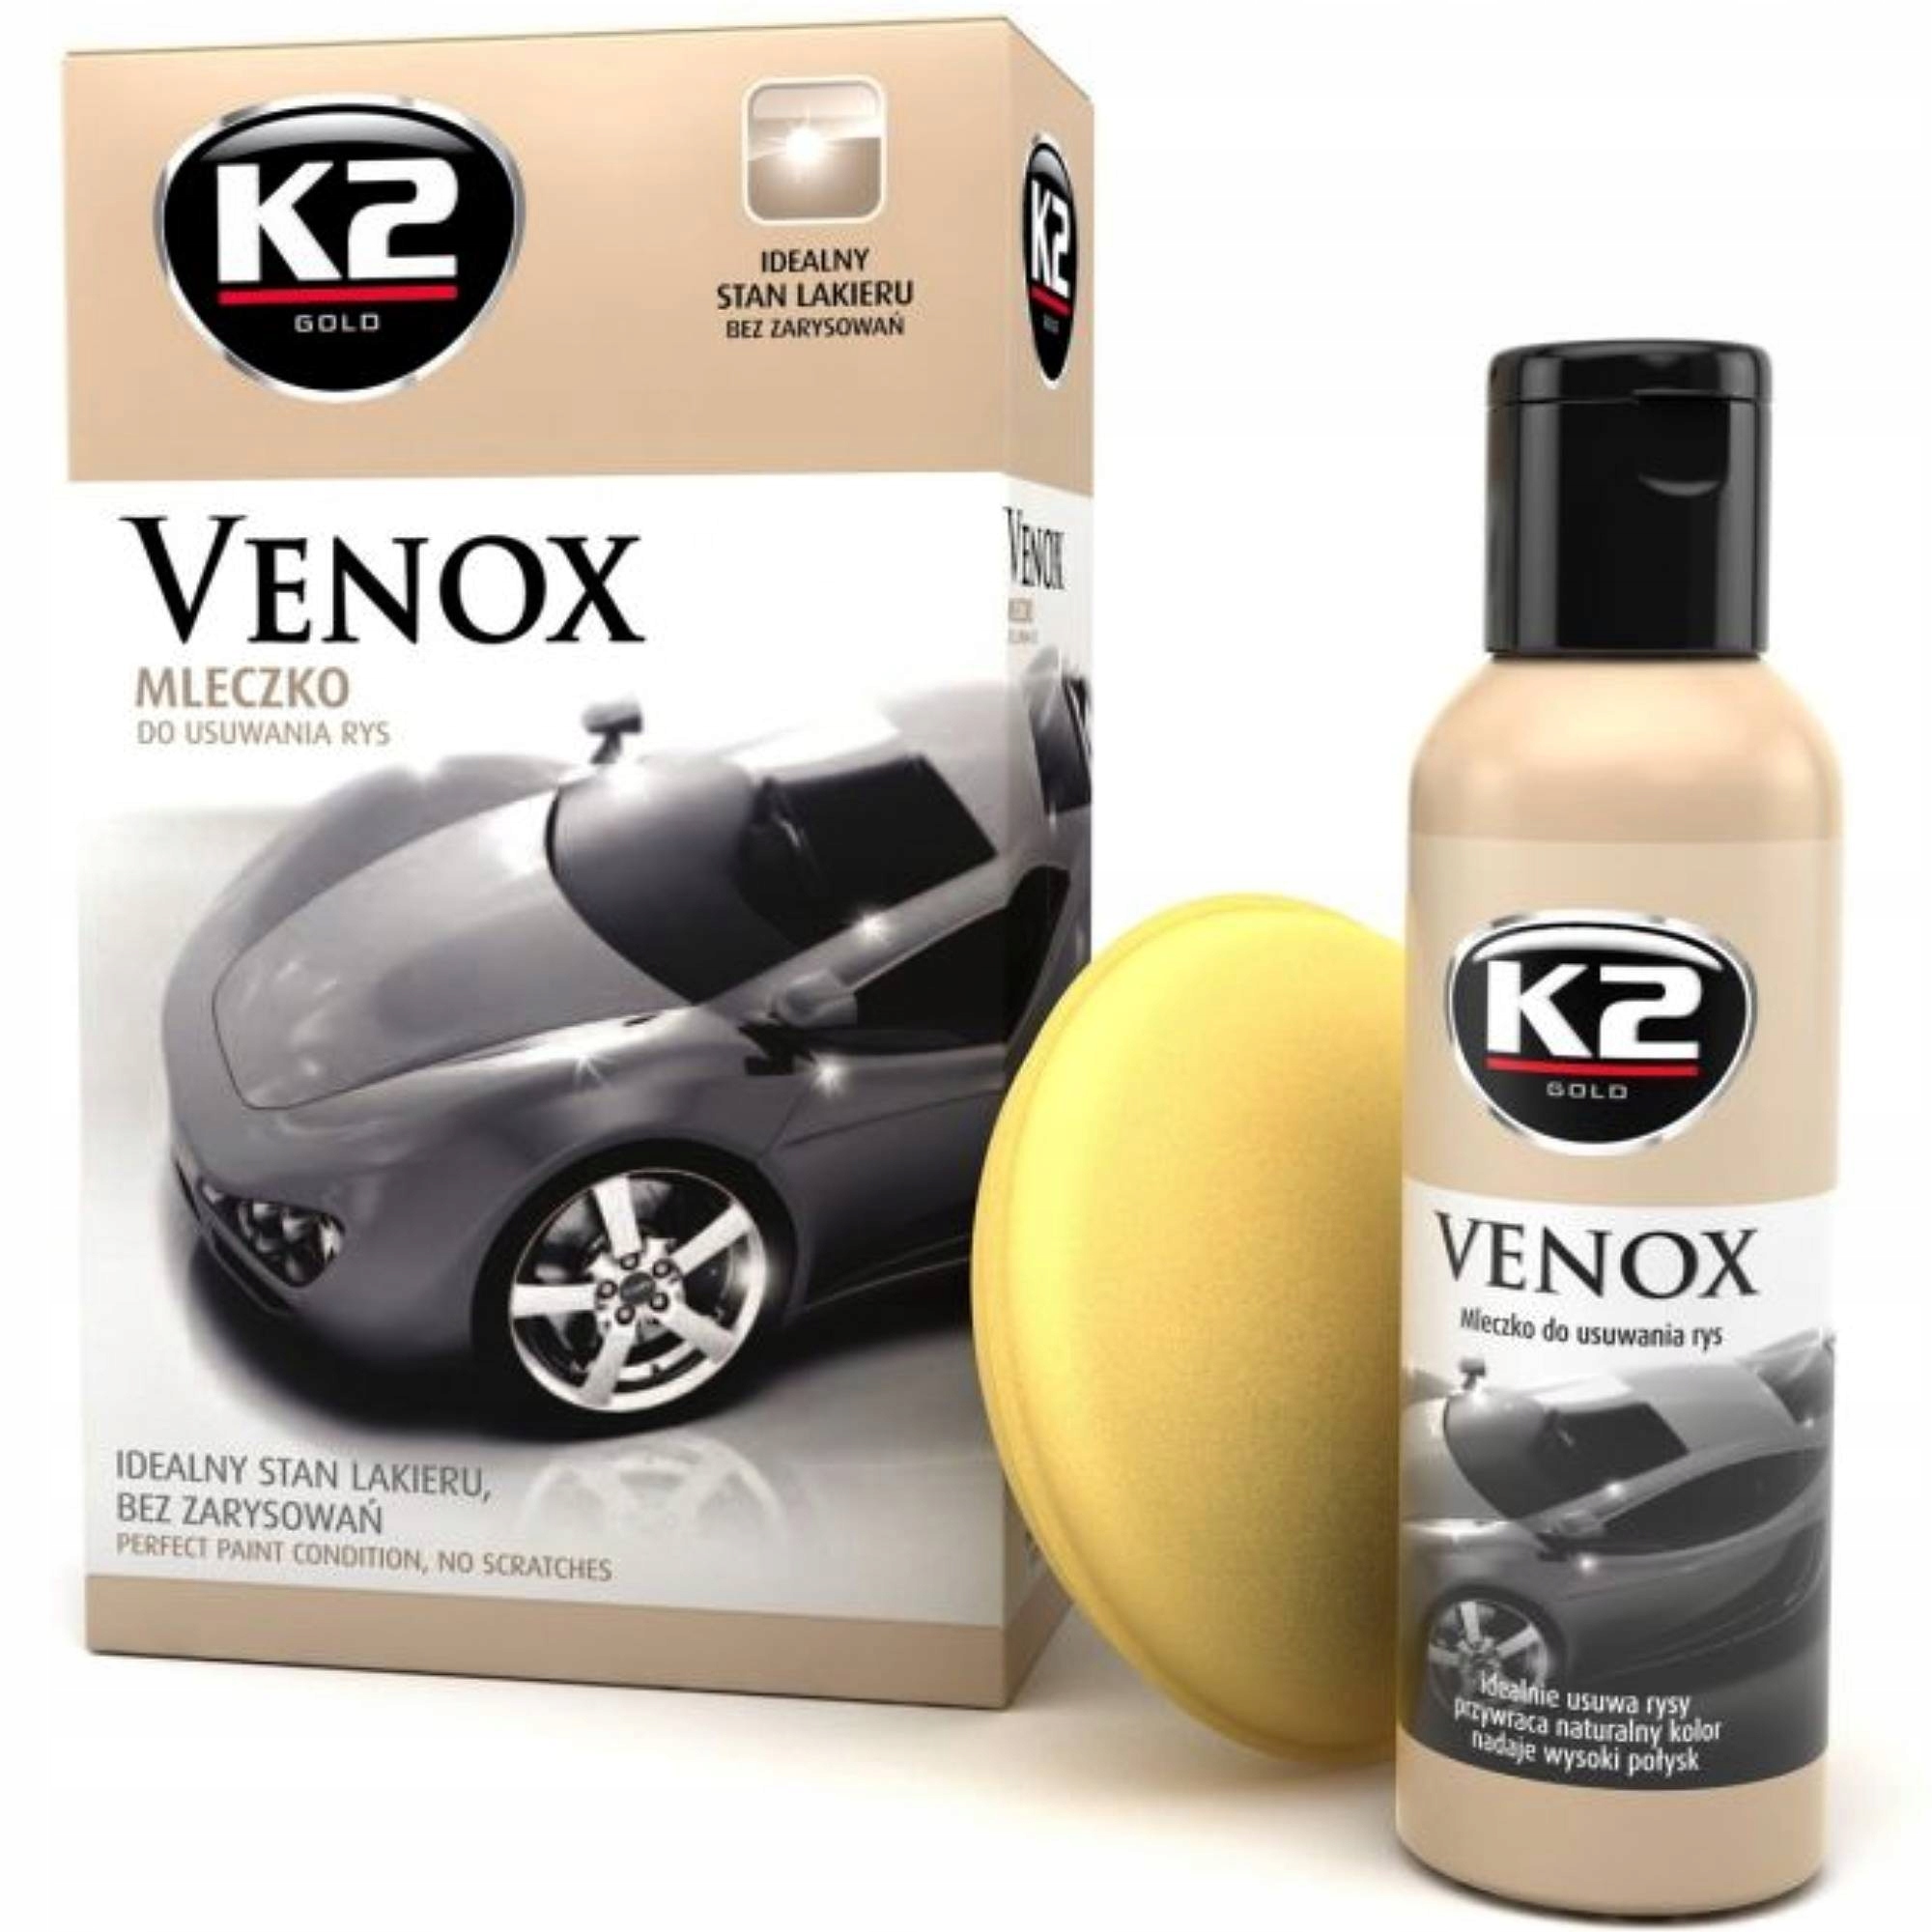 Венокс q. Венокс. Молочко полироль для авто. Venox k2 воск. Венокс с1 под.